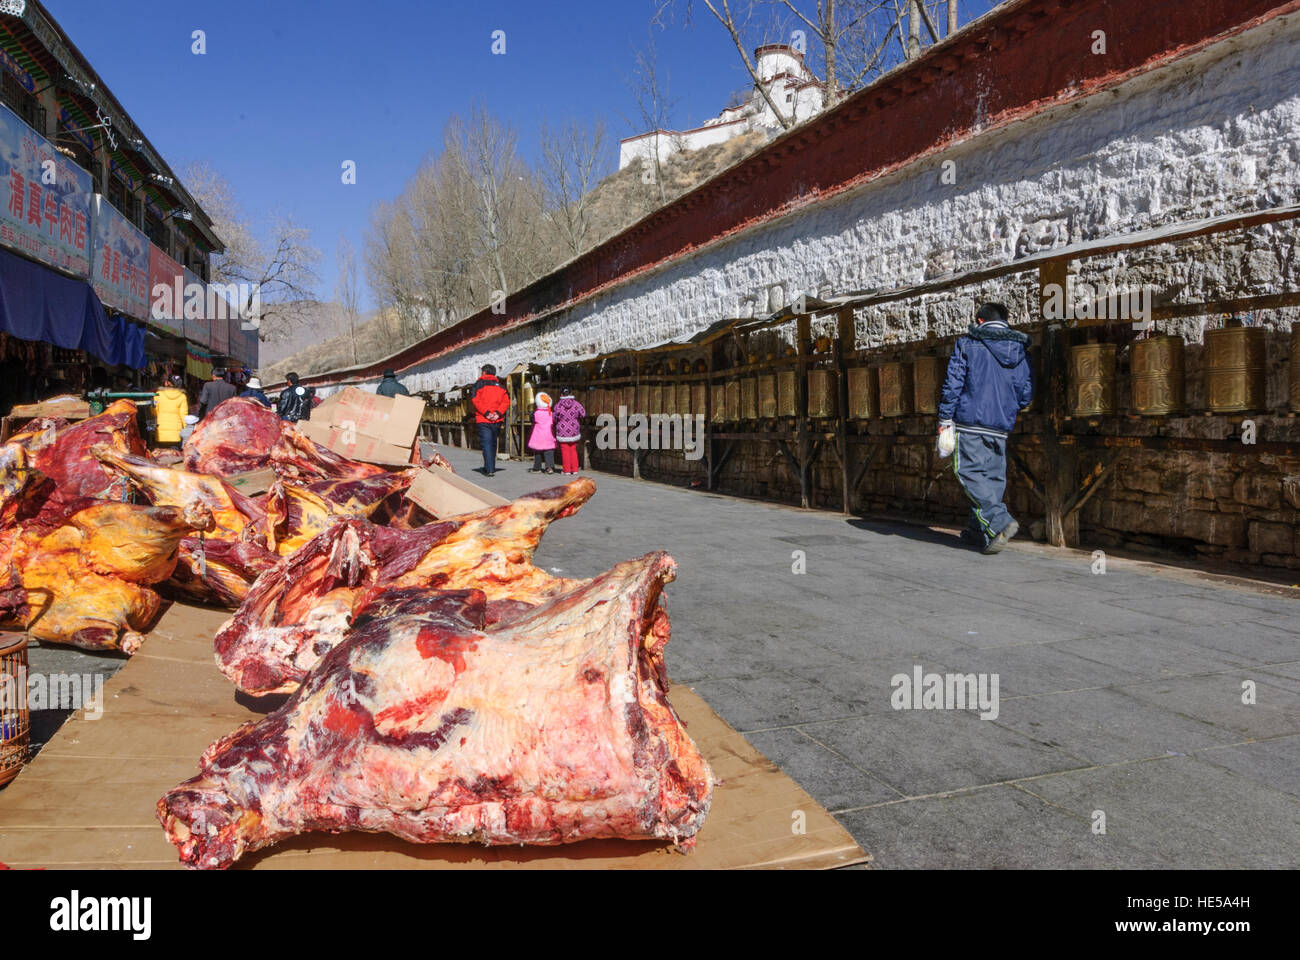 Lhasa: carne seca espera a los compradores, mientras que los tibetanos encienda la kora (peregrinaje) alrededor del Palacio Potala, molinos de oración, el Tíbet, China Foto de stock